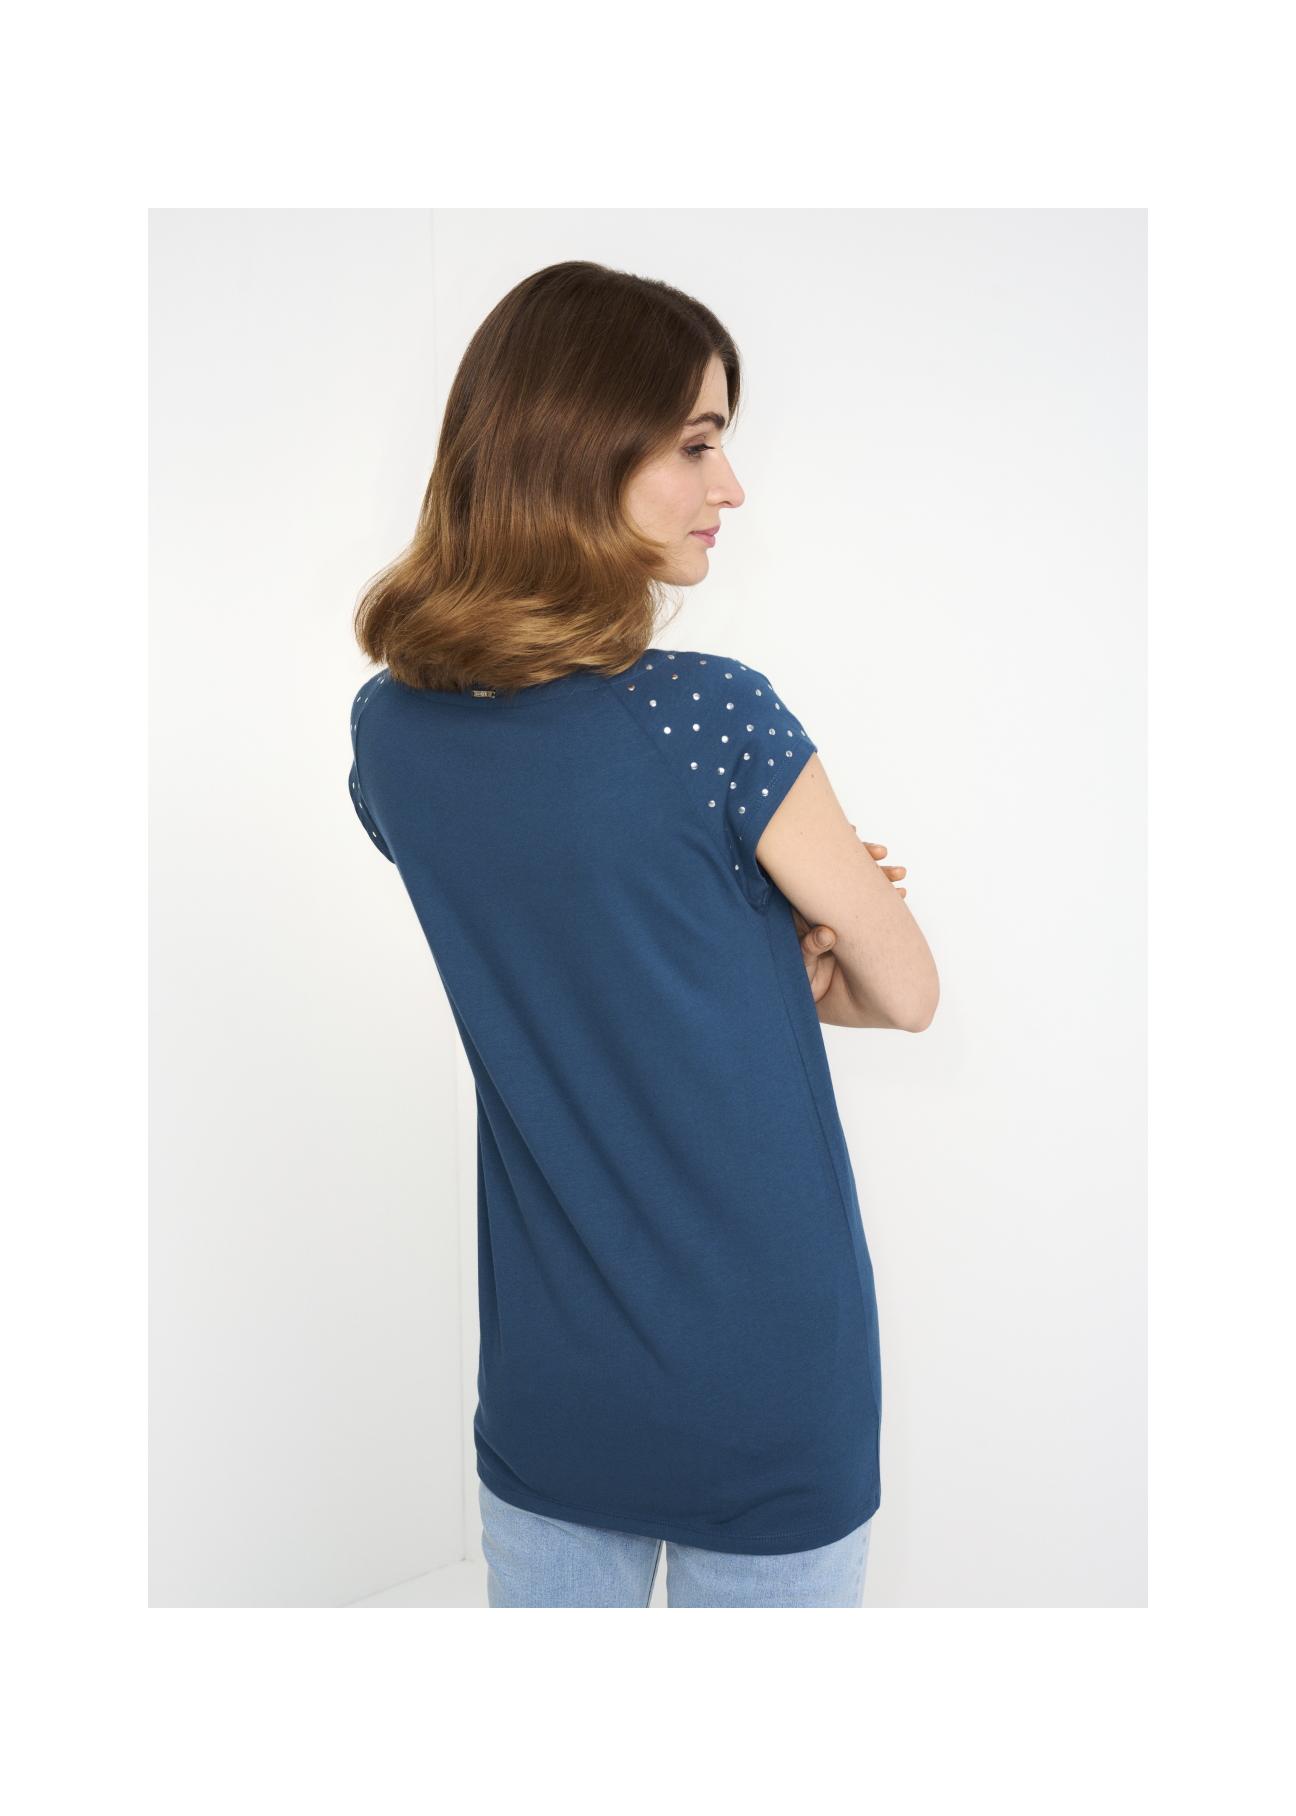 Granatowy T-shirt damski z aplikacją TSHDT-0096-69(W22)